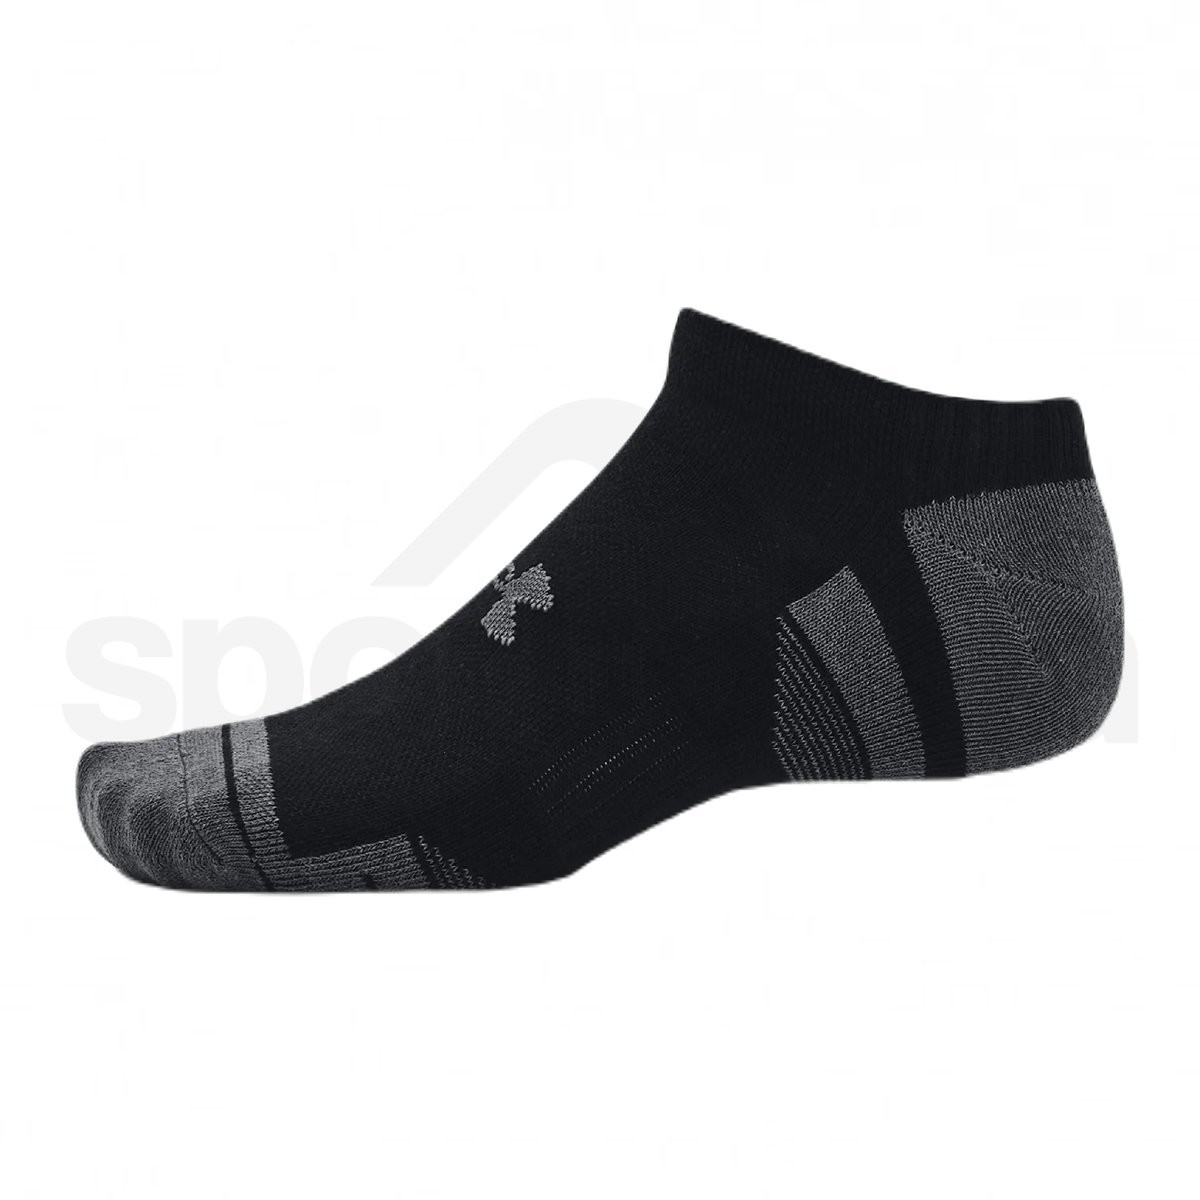 Ponožky Under Armour Performance Cotton 3pk NS - černá